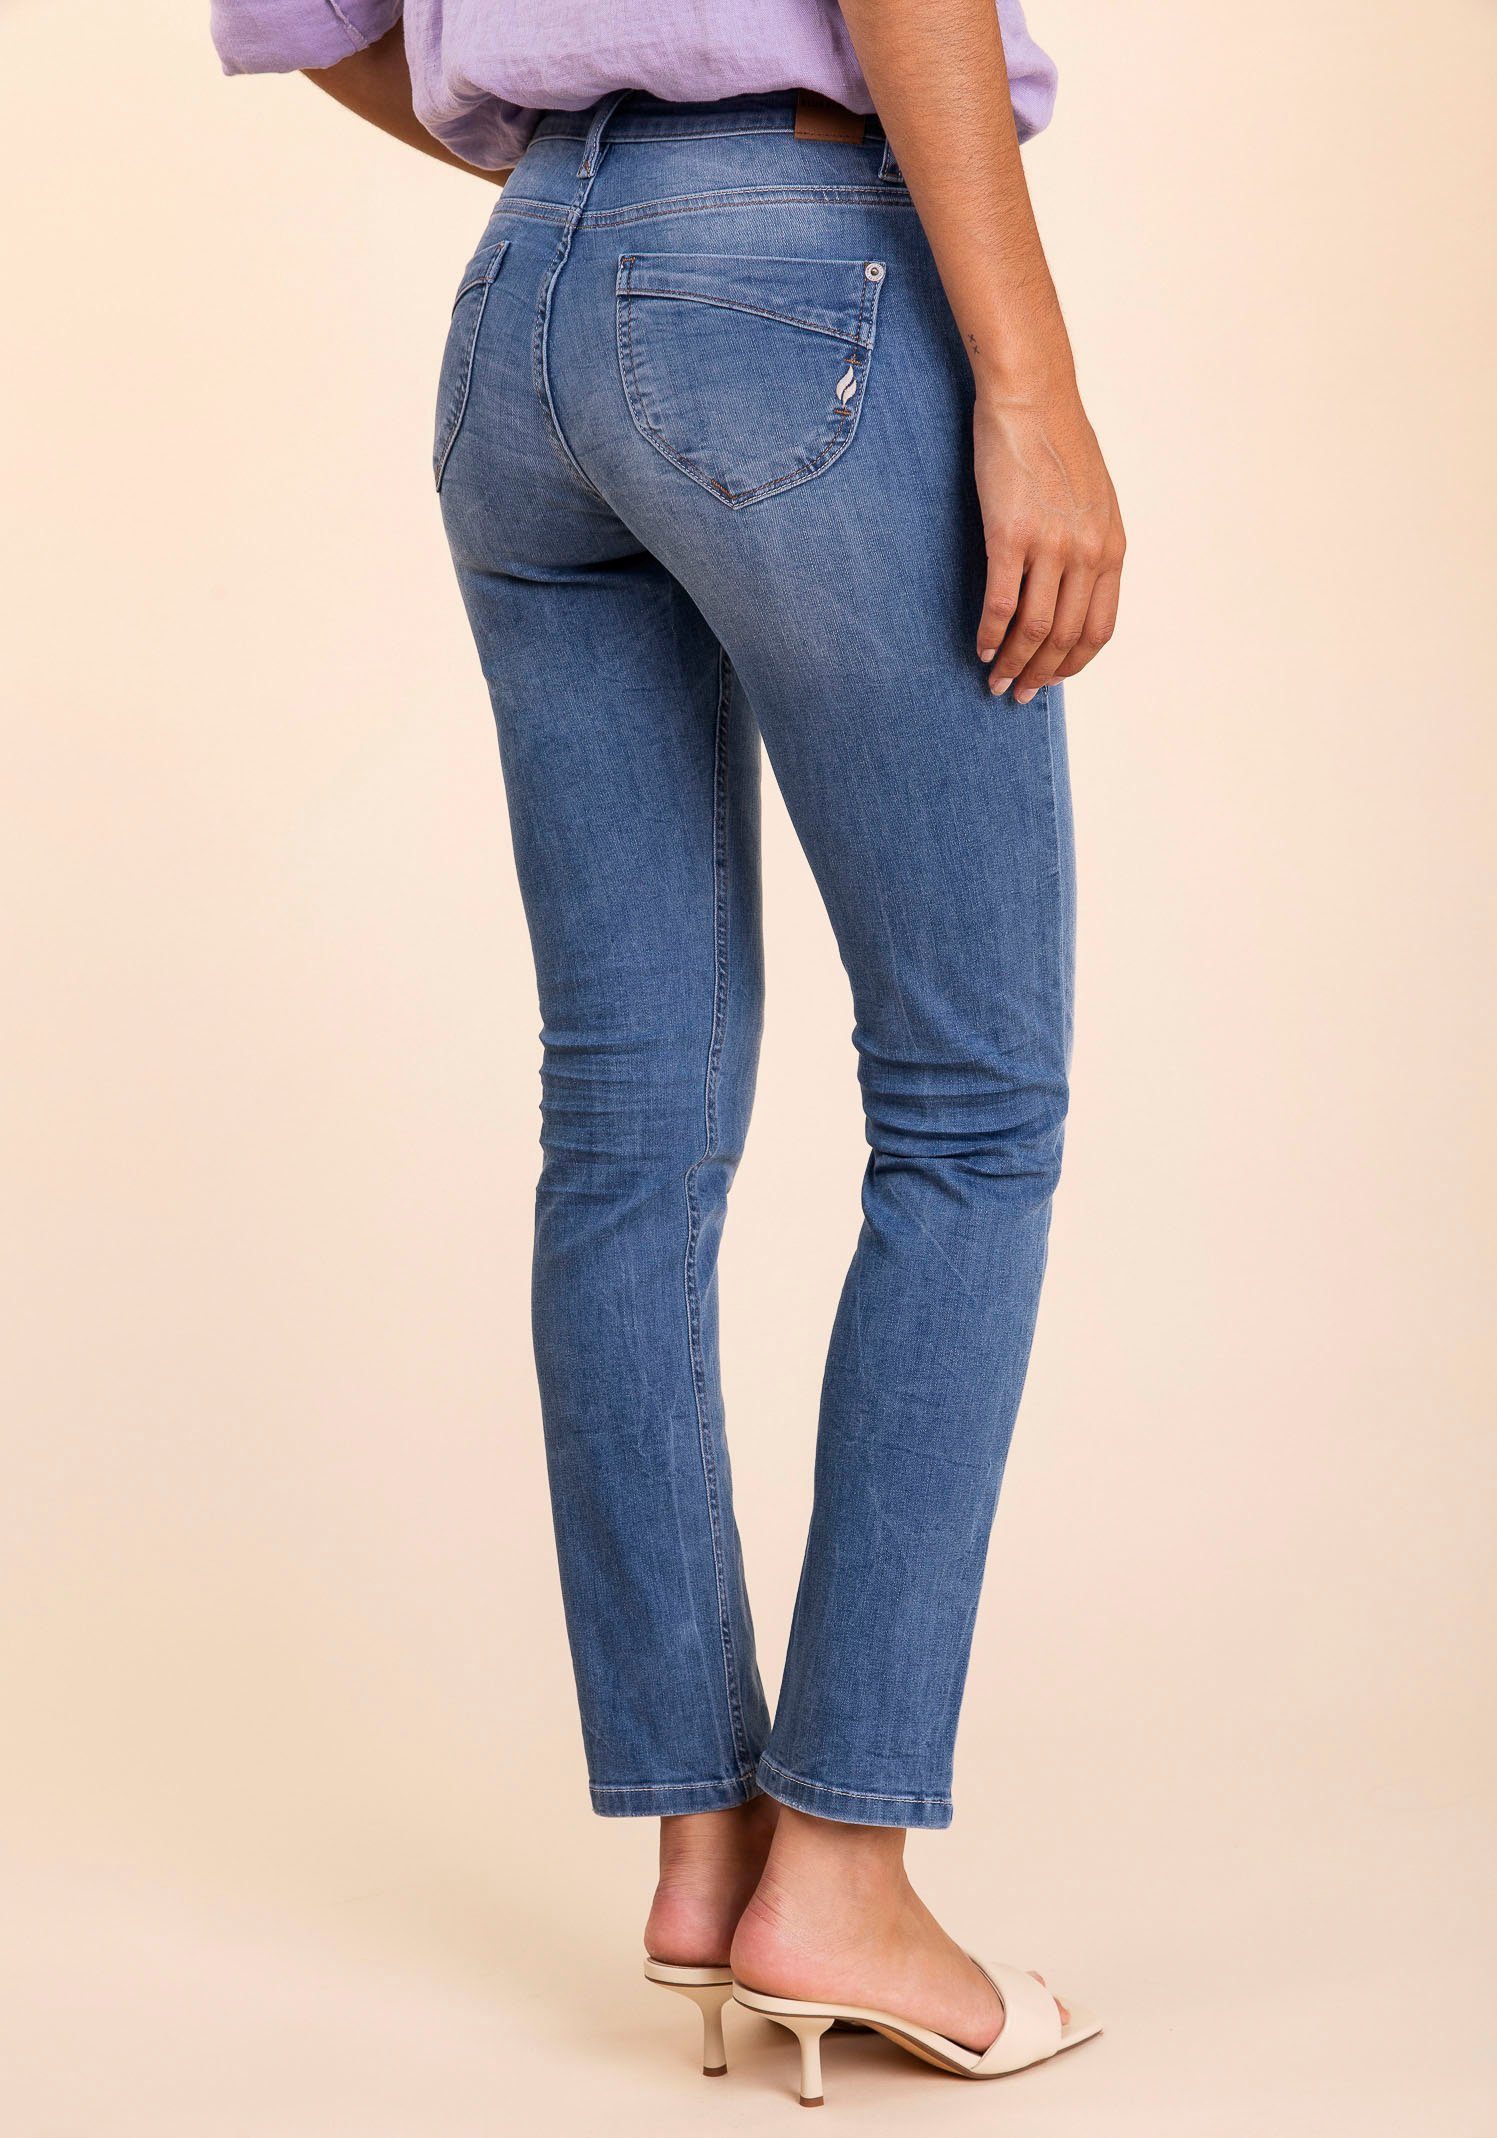 Stretchanteil Passform Slim-fit-Jeans NANCY mit tolle pacific used) für FIRE BLUE (dark eine